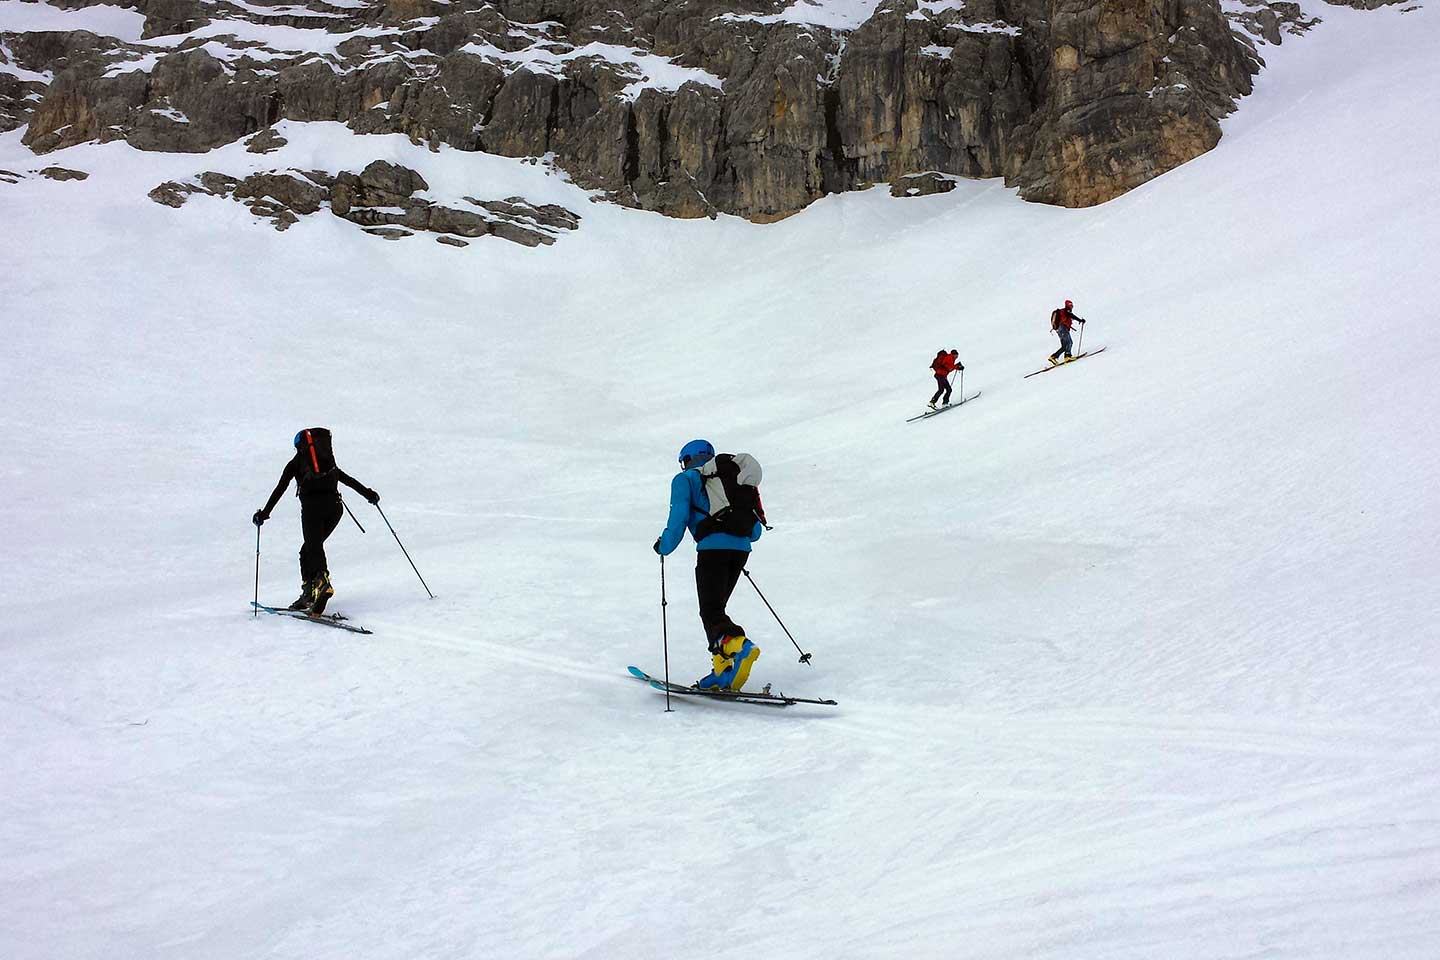 Ski Mountaineering to Tofana Terza and Vallon de Raola